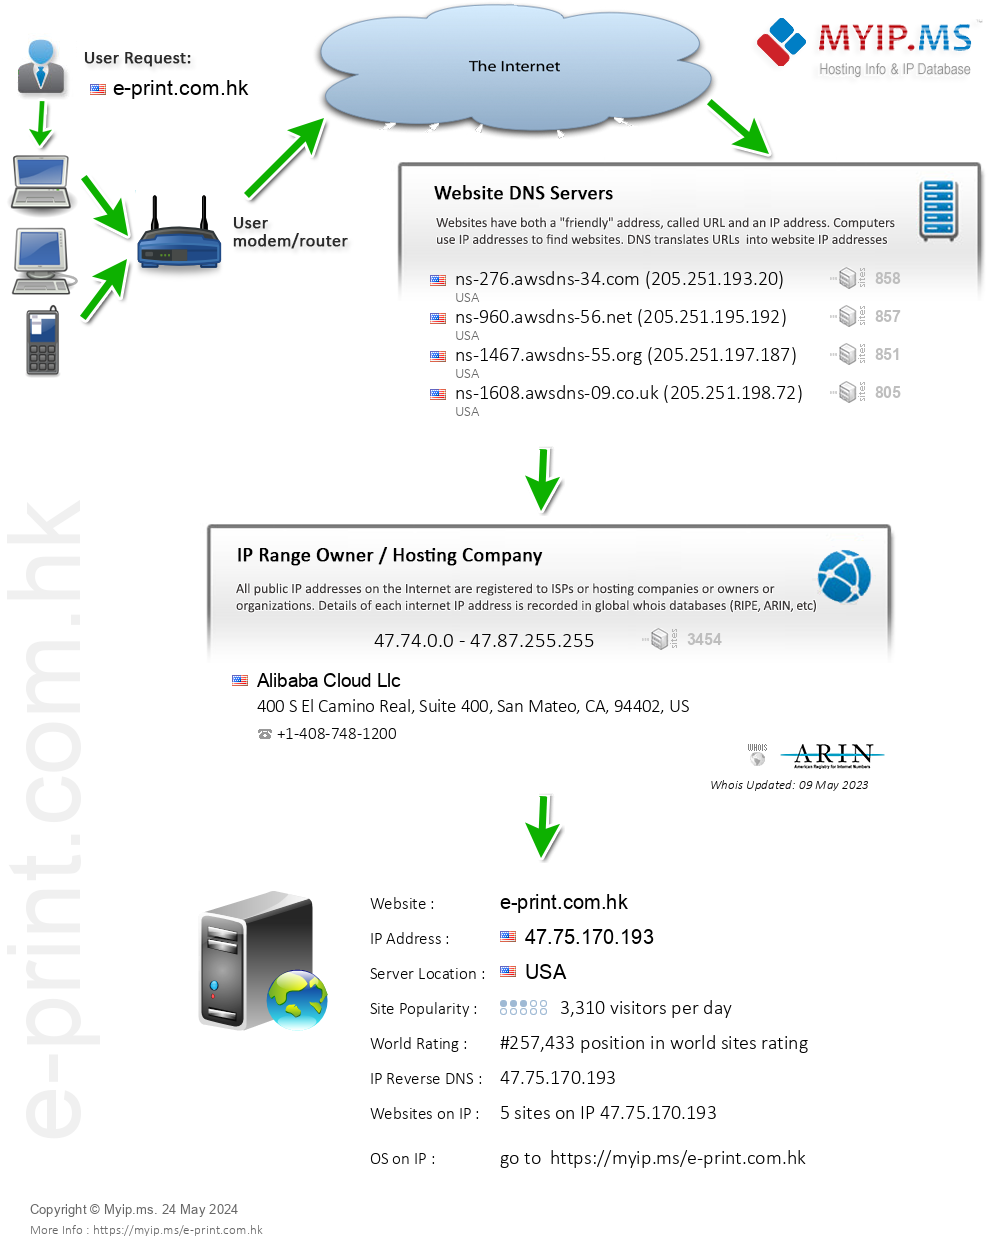 E-print.com.hk - Website Hosting Visual IP Diagram